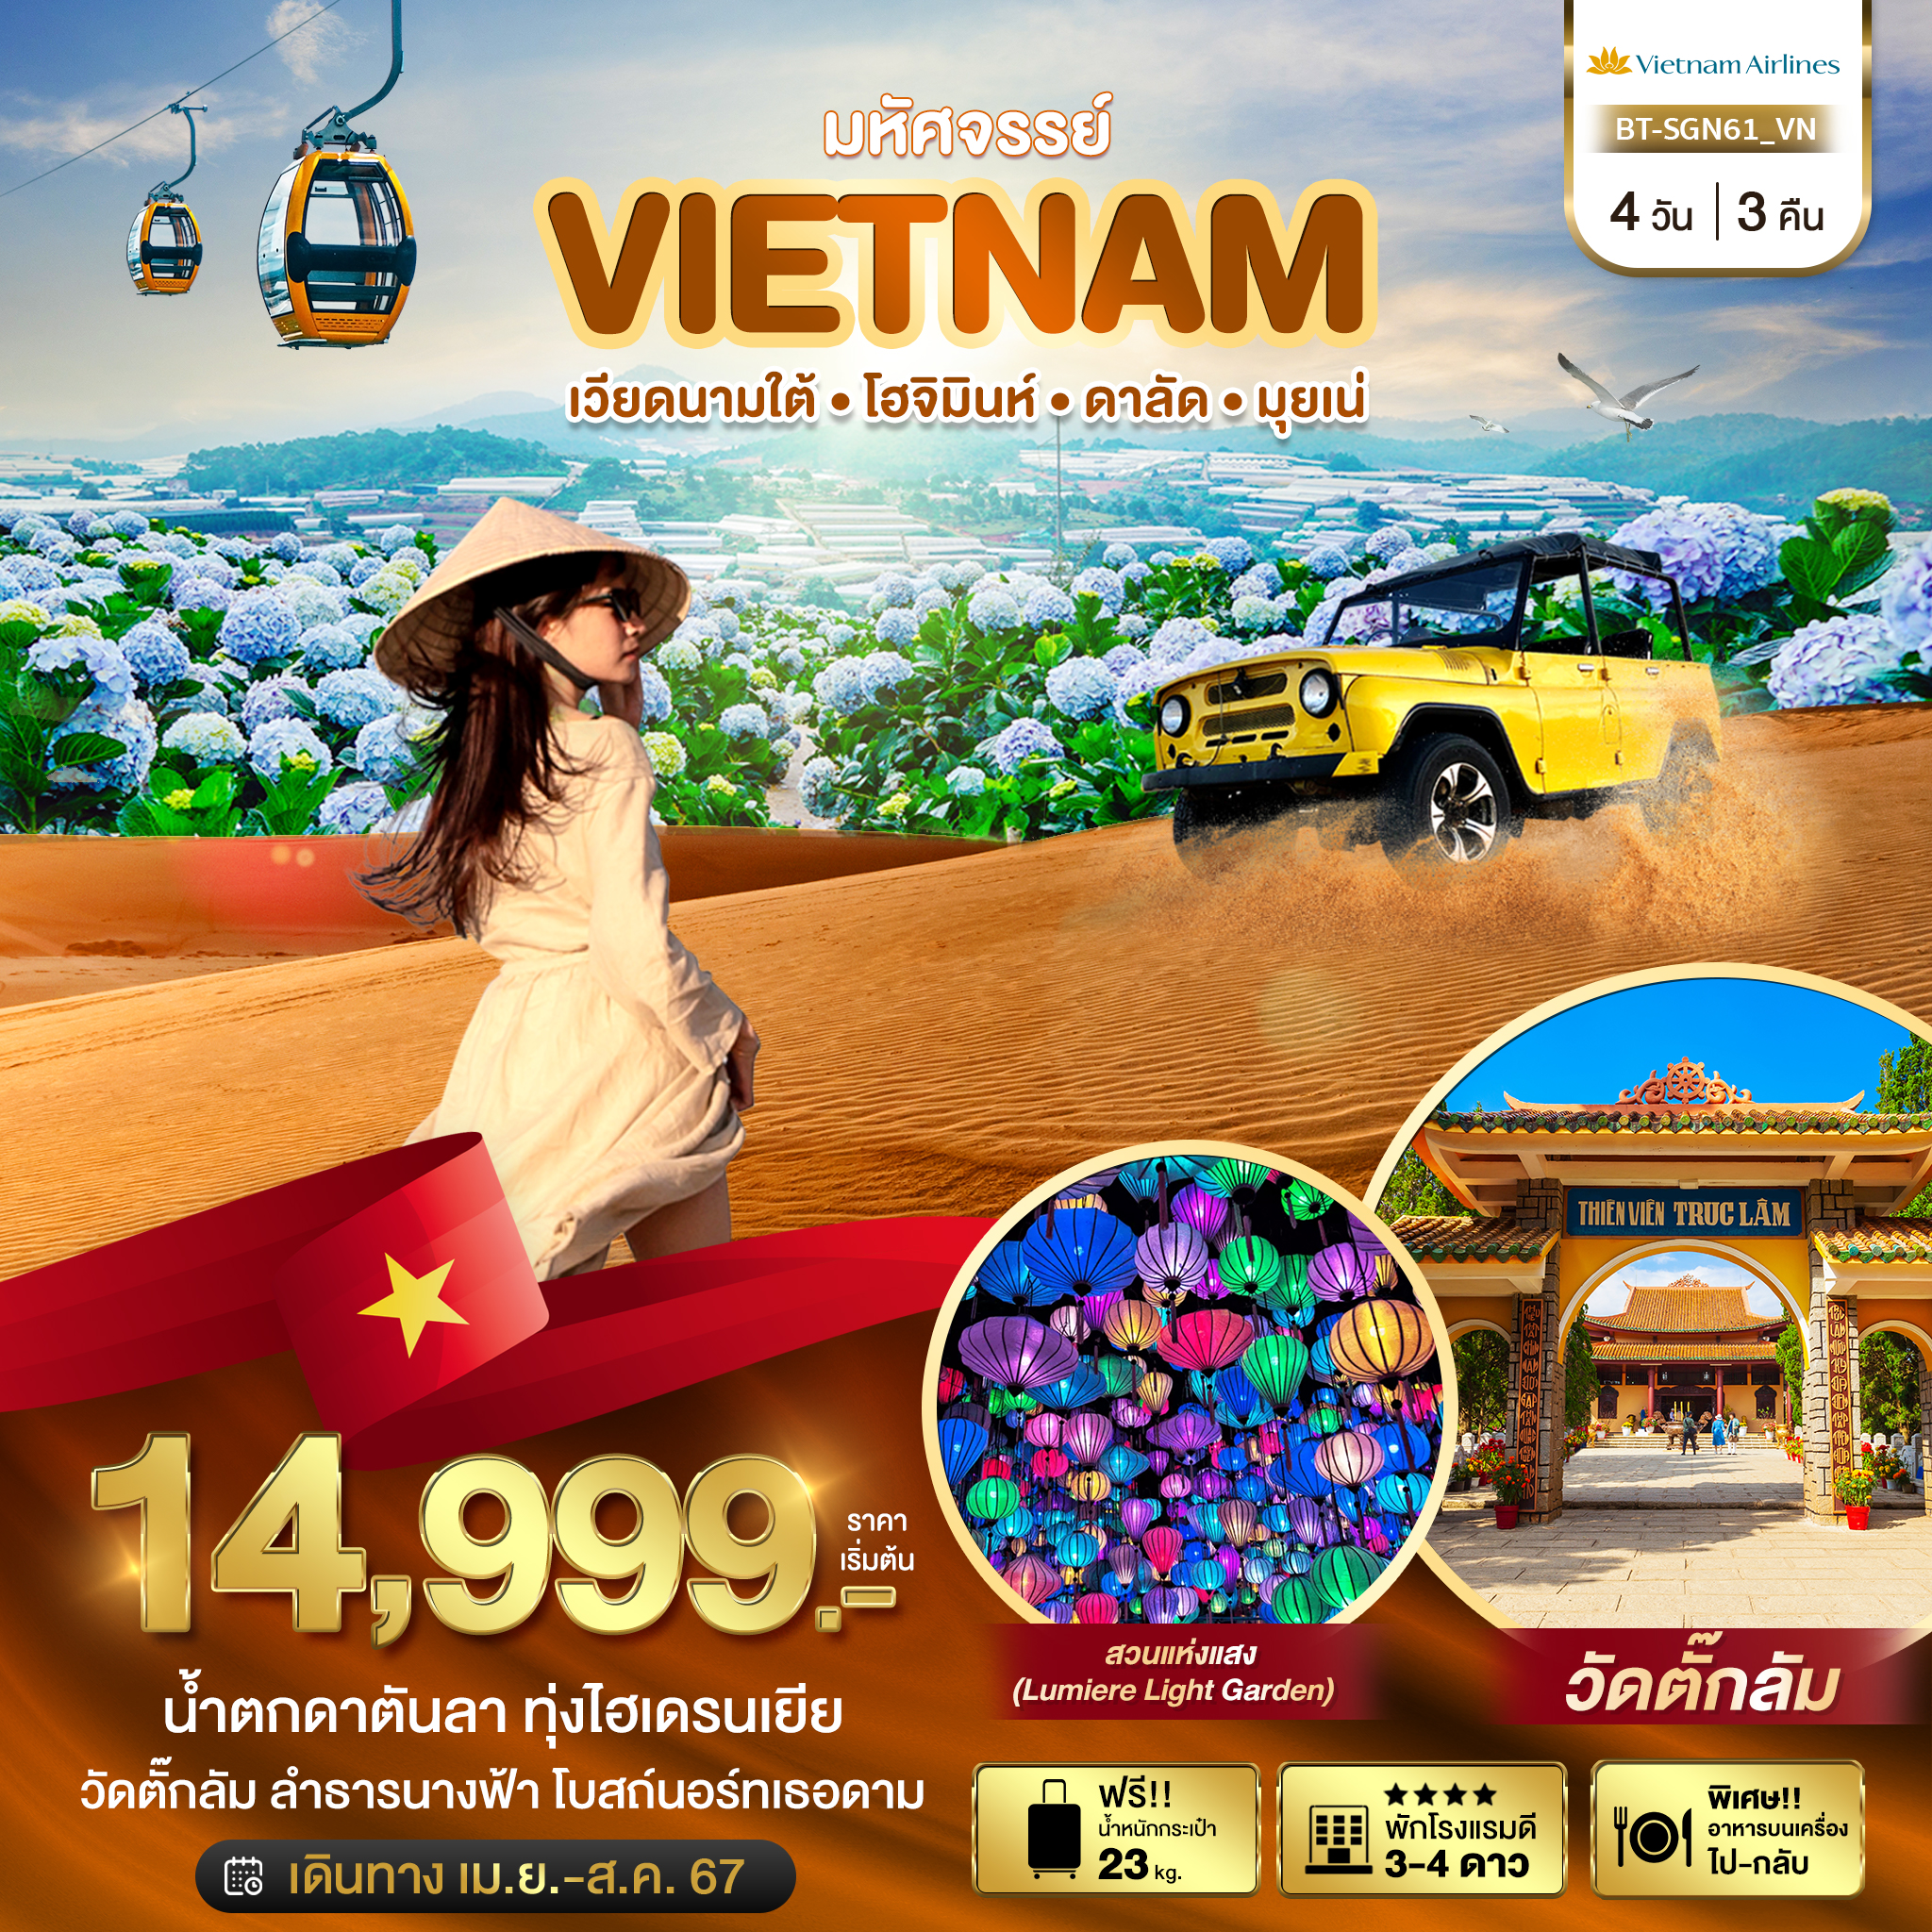 มหัศจรรย์ VIETNAM เวียดนามใต้ โฮจิมินห์ ดาลัด มุยเน่ 4D3N by VN